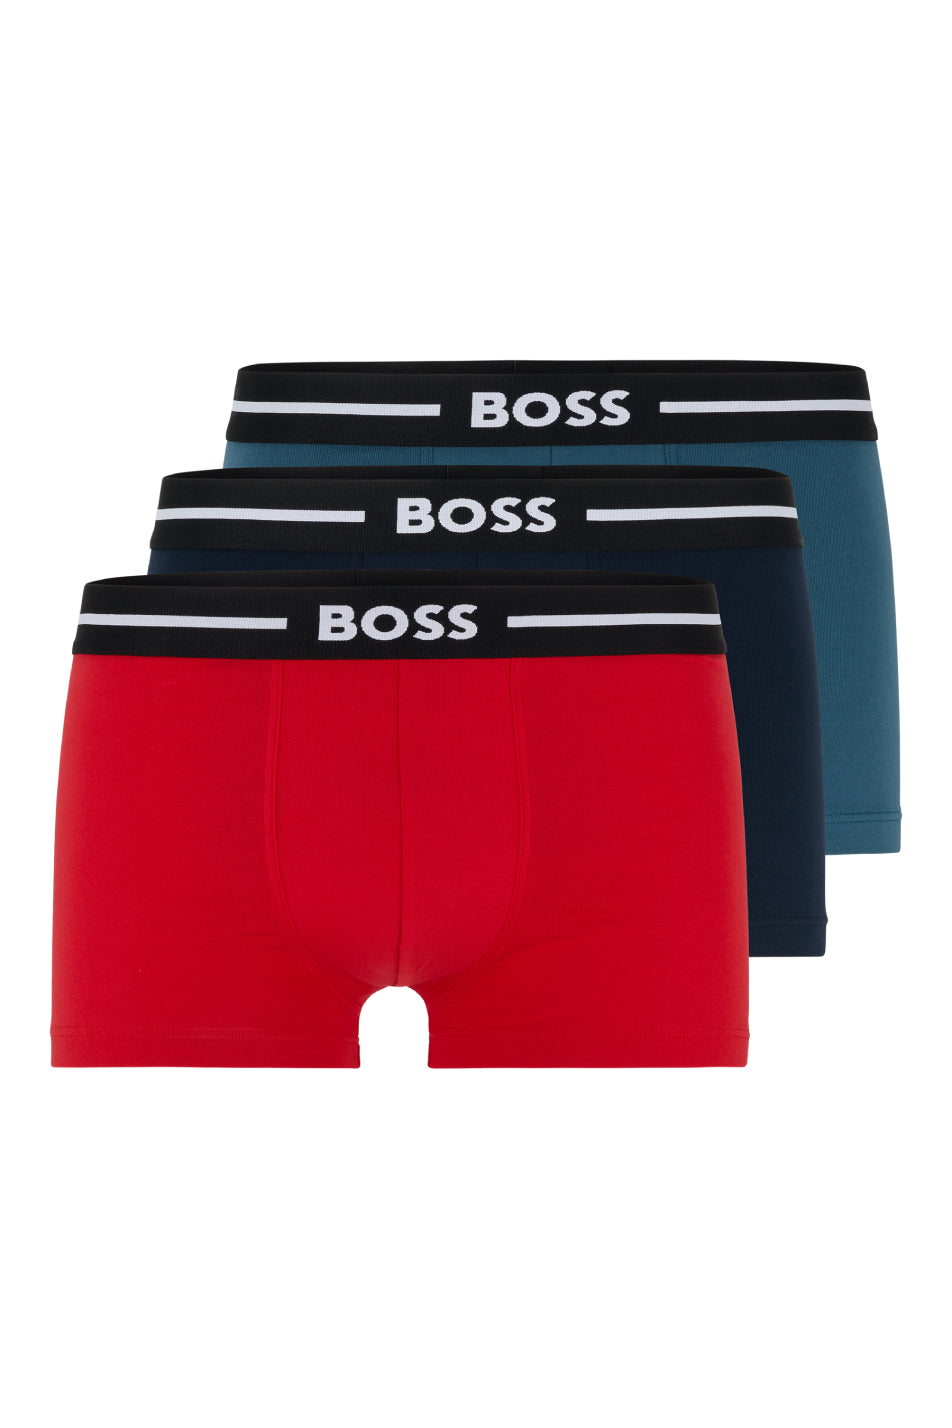 Boss 3 Pack Men's Bold Trunk